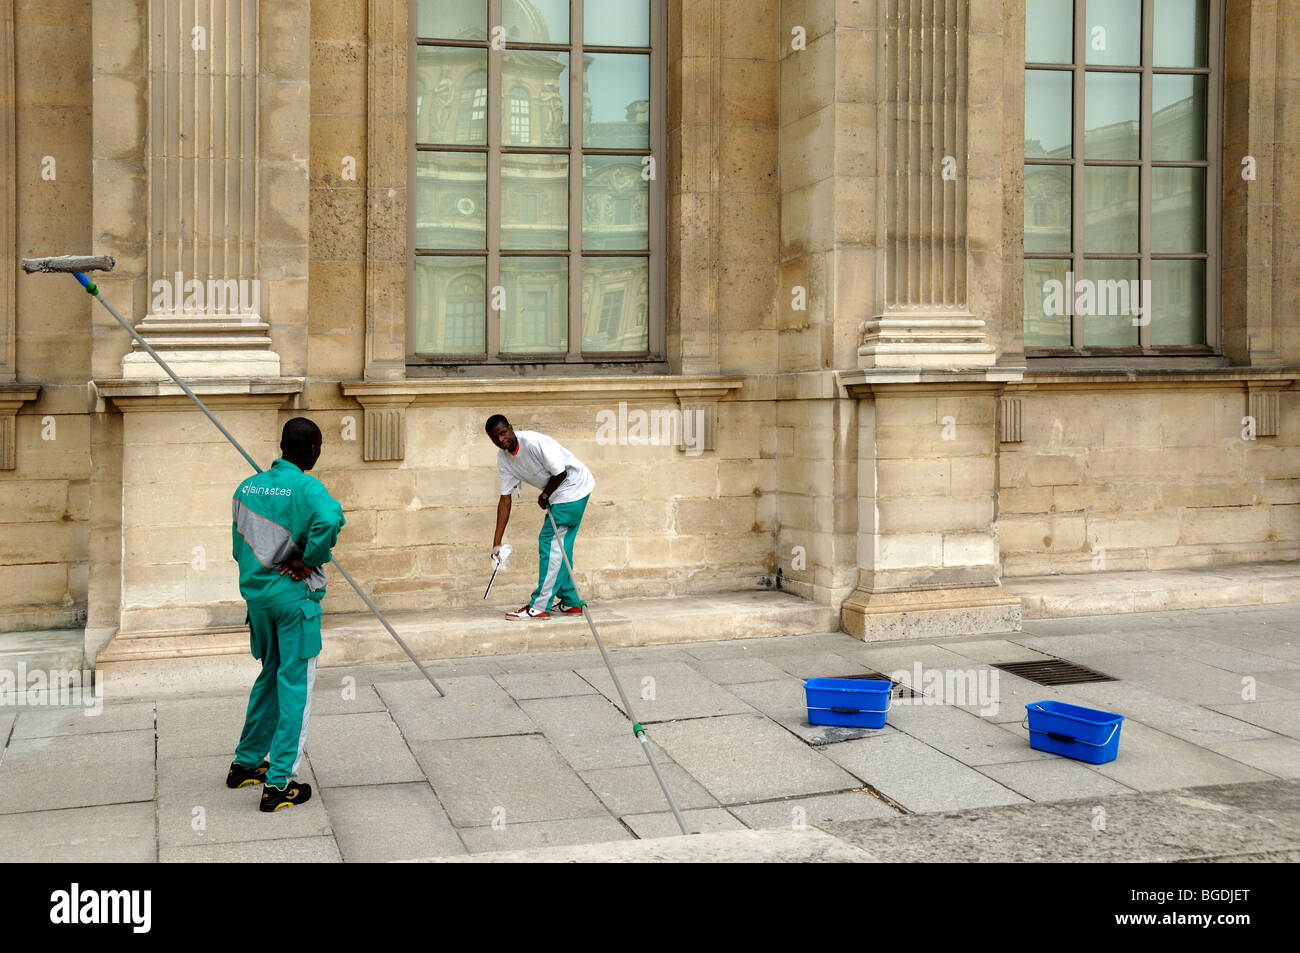 Afrikanische Immigranten, ausländische Arbeiter oder Ausländer, die Fenster des Louvre-Museums reinigen, Paris, Frankreich Stockfoto